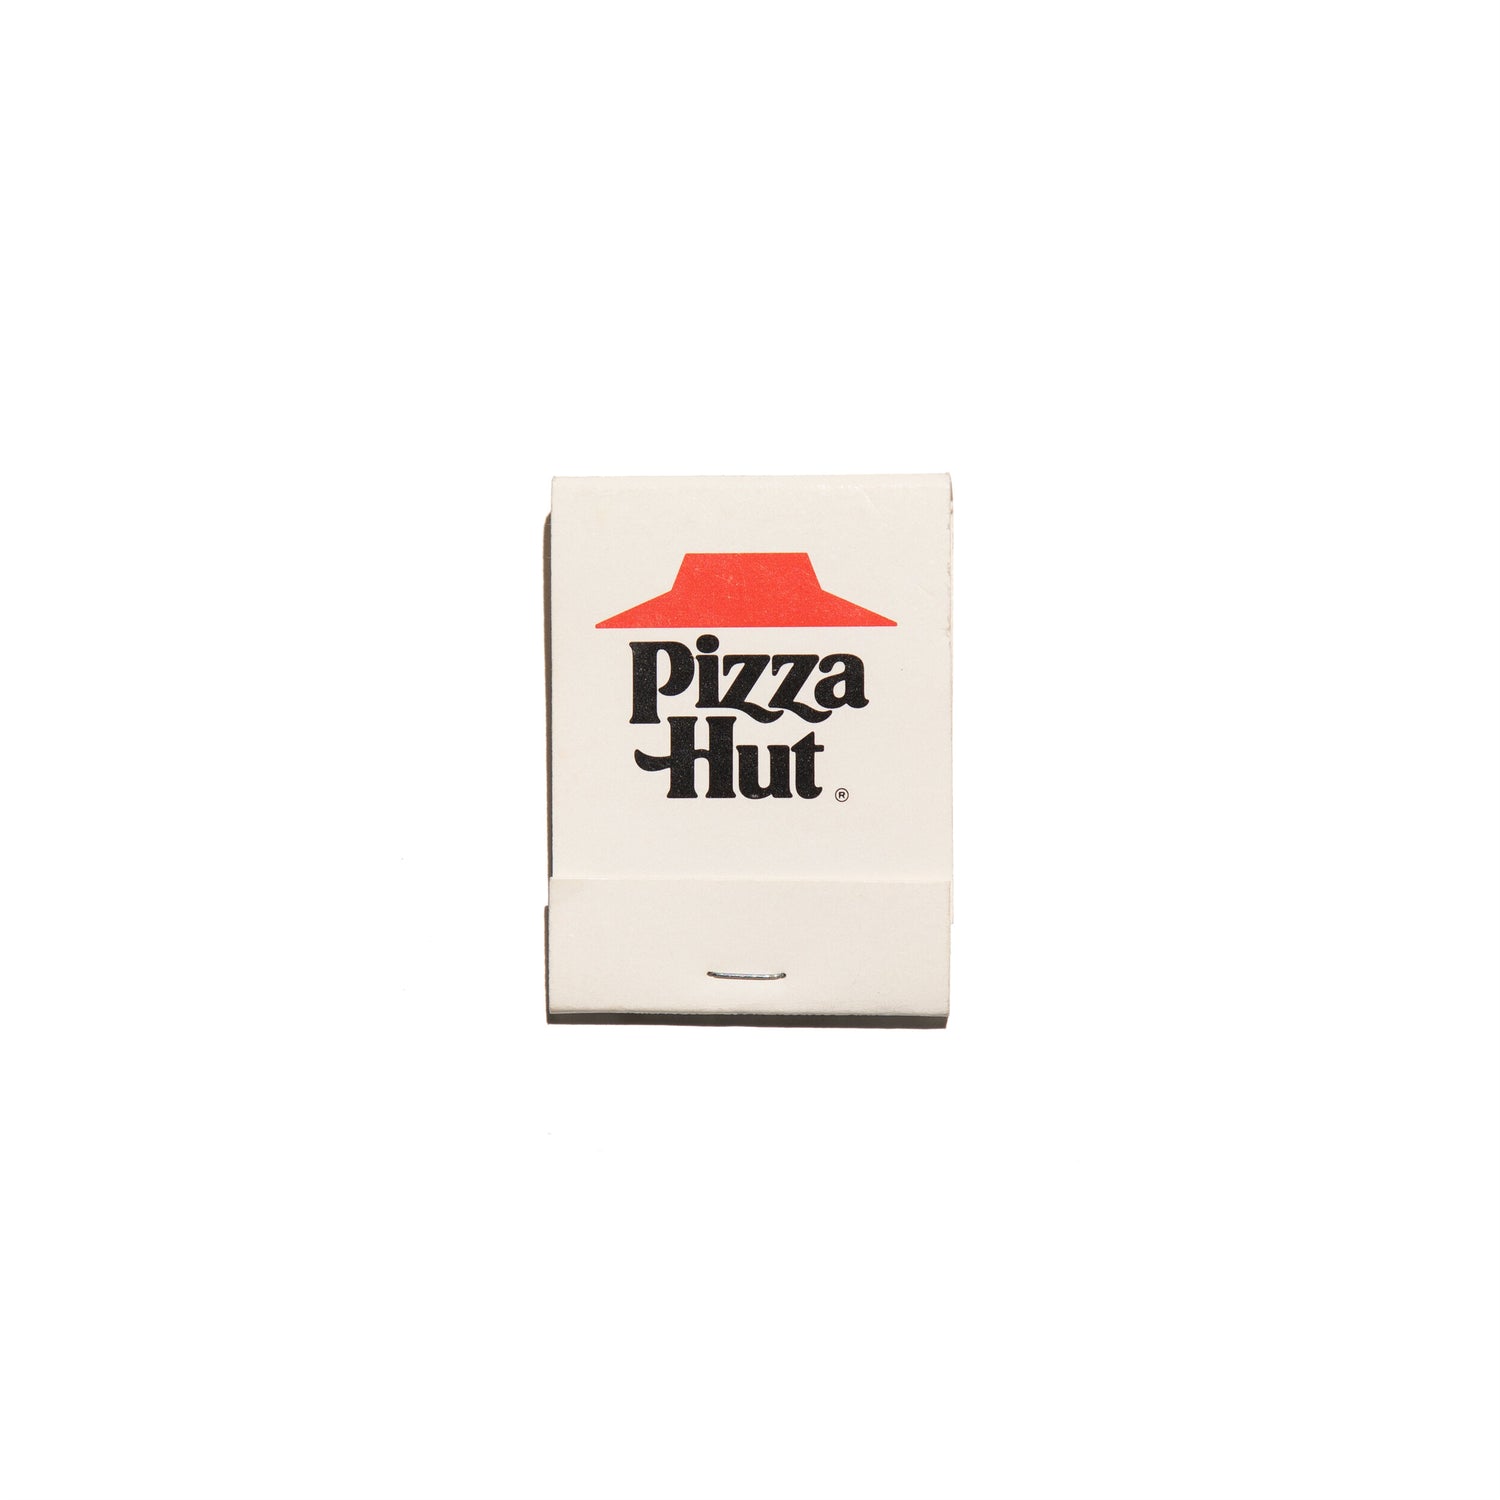 pizza hut box design